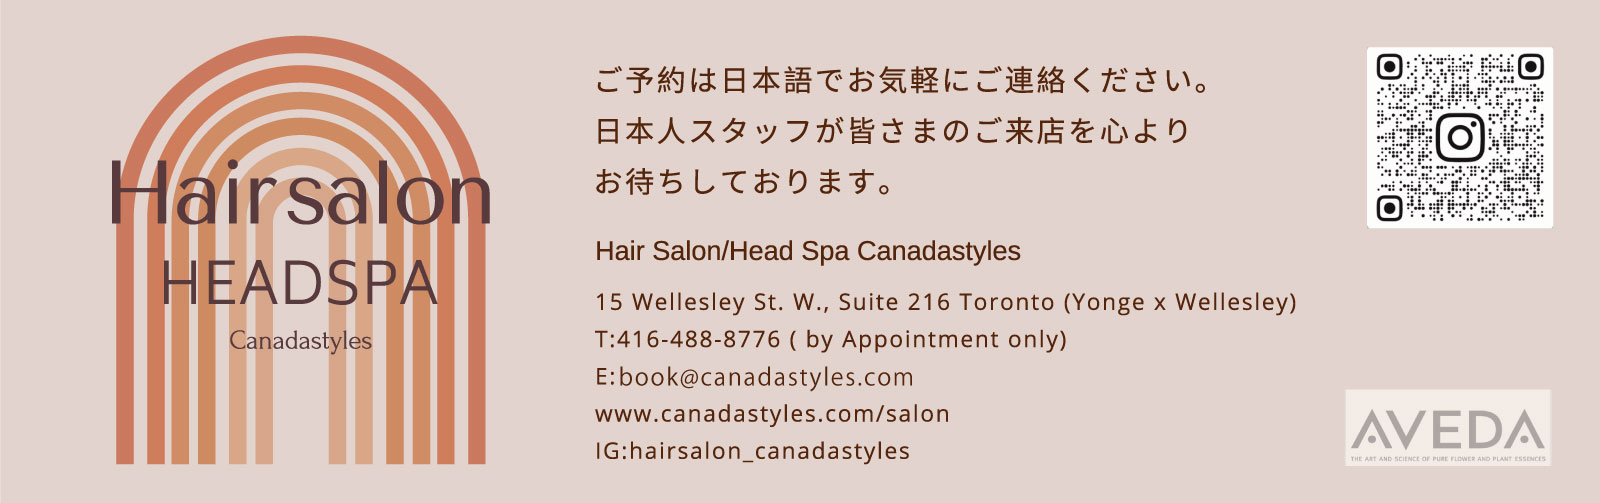 Hair salon head spa canadastyles